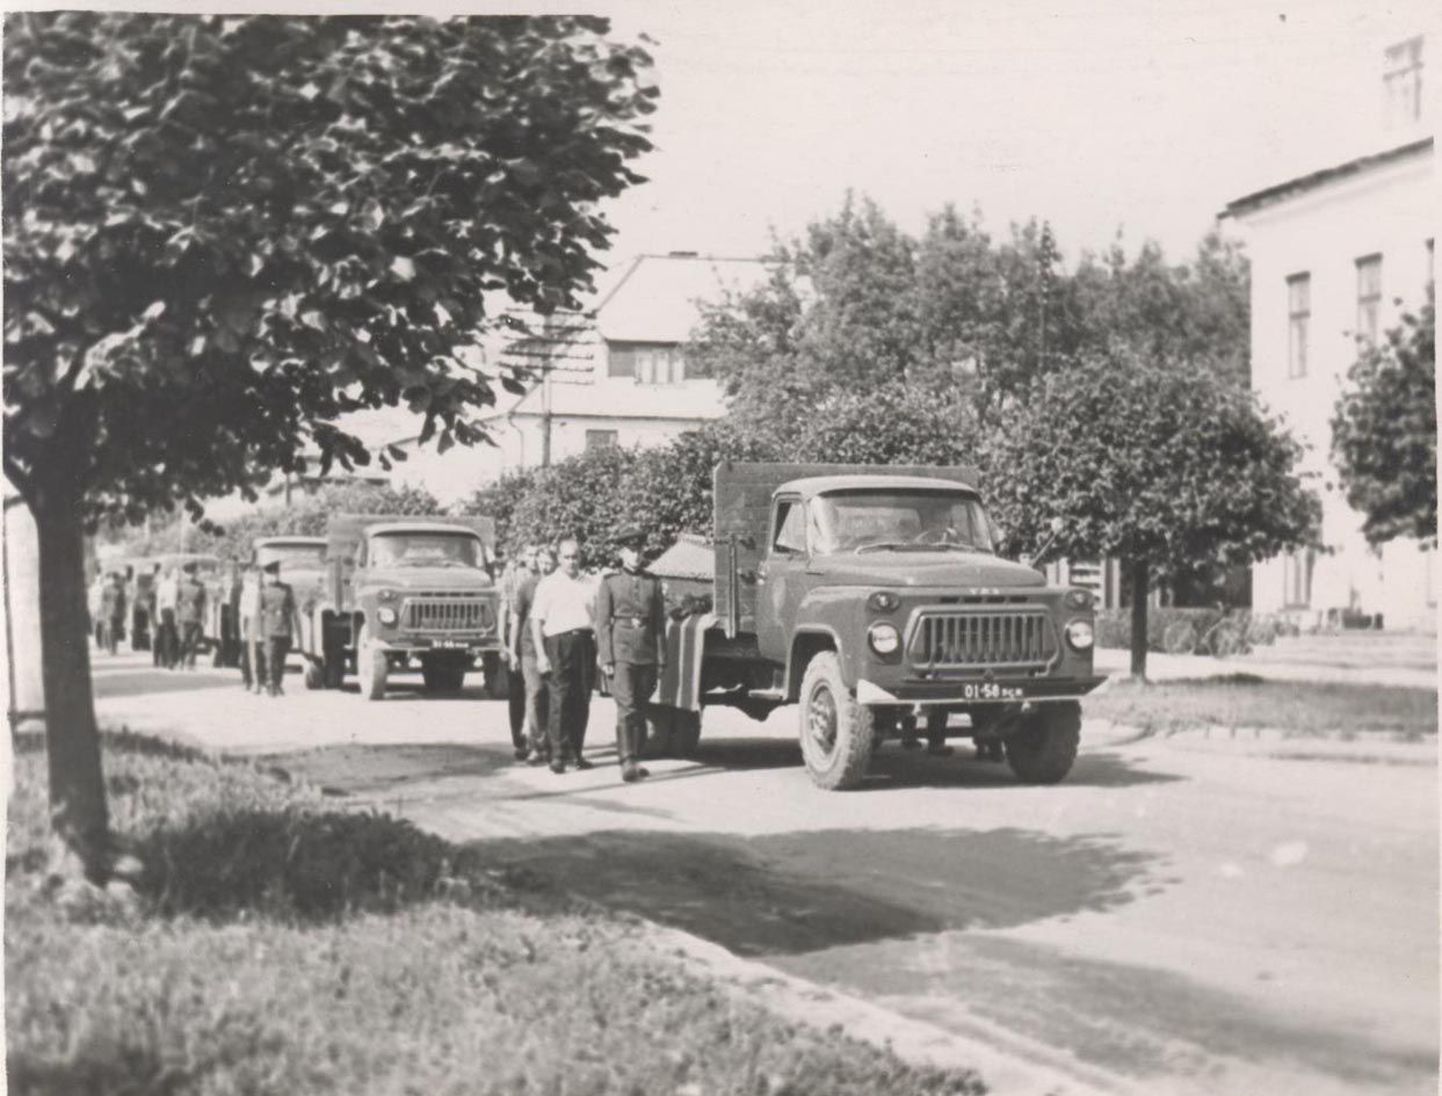 1966. aasta 9. juuli õhtupoolik. Läbi Türi linna venib pea kilomeetri pikkune auto- ja inimkolonn keskväljakult Särevere poole. Sõjaväelased, pioneerid, sõjaveteranid, toonase nomenklatuuri esindajad. Kantakse pärgi, lillekimpe. 
Eriskummaliseks muudavad rongkäigu 25 GAZ-53 veoautot, mille langetatud portedega kastid on kaetud punase kangaga. Iga masina koormaks on kaks punasesse riidesse mähitud sarka – kokku 50 puusärki.
Inimrivi peatub linna piiril. Sinna, paarikümne meetri kaugusele teest, kohta, mida järgnevate kõnede käigus nimetatakse «1941. aasta Türi kaitselahingute palavaima heitluse kohaks», on kaevatud hiigelhaud.
Kell 17.45 avab Türi Linna TSN Täitevkomitee esimees Arni Metsjõe leinamiitingu: see on  Türi lähistel 1941. aasta sõjasuvel langenud punasõdurite ümbermatmine, kelle säilmed on välja kaevatud Türi ümbrusest – Kõrgessaarest, Mäekülast ja mujalt.
EKP Paide Rajoonikomitee ja Paide Rajooni Töörahva Saadikute Nõukogu häälekandja Võitlev Sõna kirjutab: «Ühishauda sängitati 1941. a. juulikuus Türi kaitselahingutes langenud võitlejate põrmud.»
Leht kirjutasbveel sedagi, et «… 25 aastat tagasi peeti Türi lähistel sissetungivate fašistlike hordide vastu üle nädala ägedaid lahinguid, ühed ägedamad Suure Isamaasõja alguses ja noore Nõukogude Eesti territooriumil üldse. Kõrvuti Nõukogude armee regulaarvägedega astusid siin lahinguisse Läti ja Eesti hävituspataljonide võitlejad.» 
Needsamad «kaitselahingutes osalejad» suutsid eelnevalt ja taganedes põletada ja hävitada Türil ja ümbruskonna külades arvukalt elu- ja tootmishooneid, mõrvata kohalikke elanikke. Eriti jõhkrad olid läti punased (Punaarmee 8. armee 10. laskurkorpuse alluvusse viidud Läti hävituspataljon): 50st Karjaküla talust ja saunast põletasid nad maha 23 majapidamise hooned.